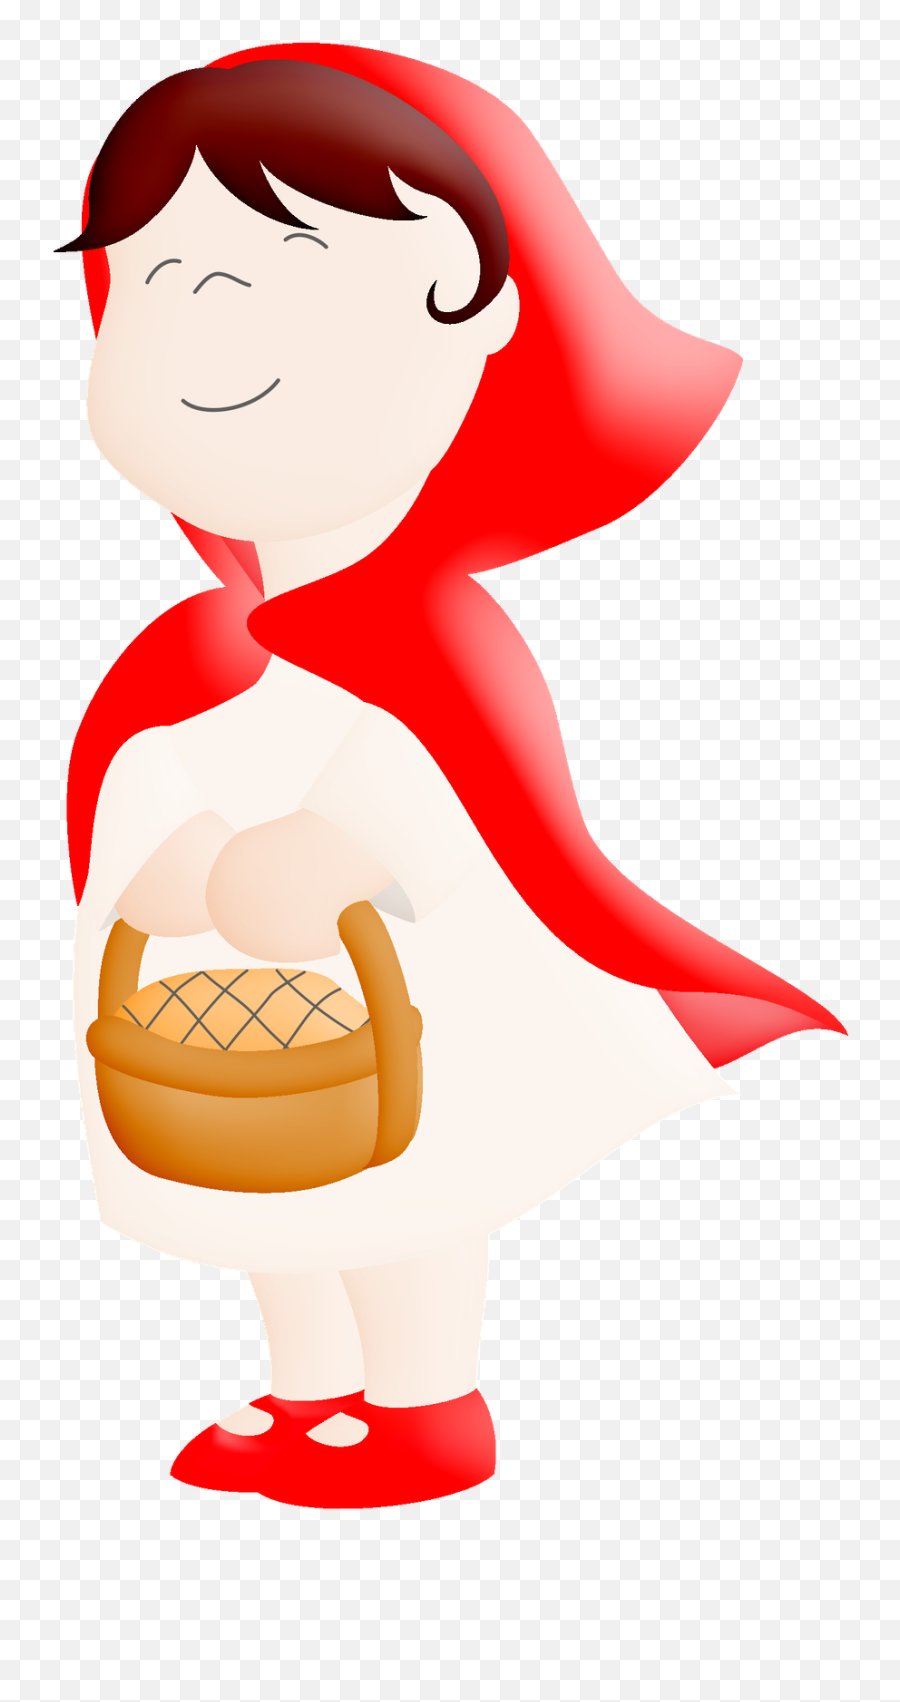 Chapeuzinho Vermelho - Fictional Character Emoji,Como Fazer Emoticon De Morango De Feltro